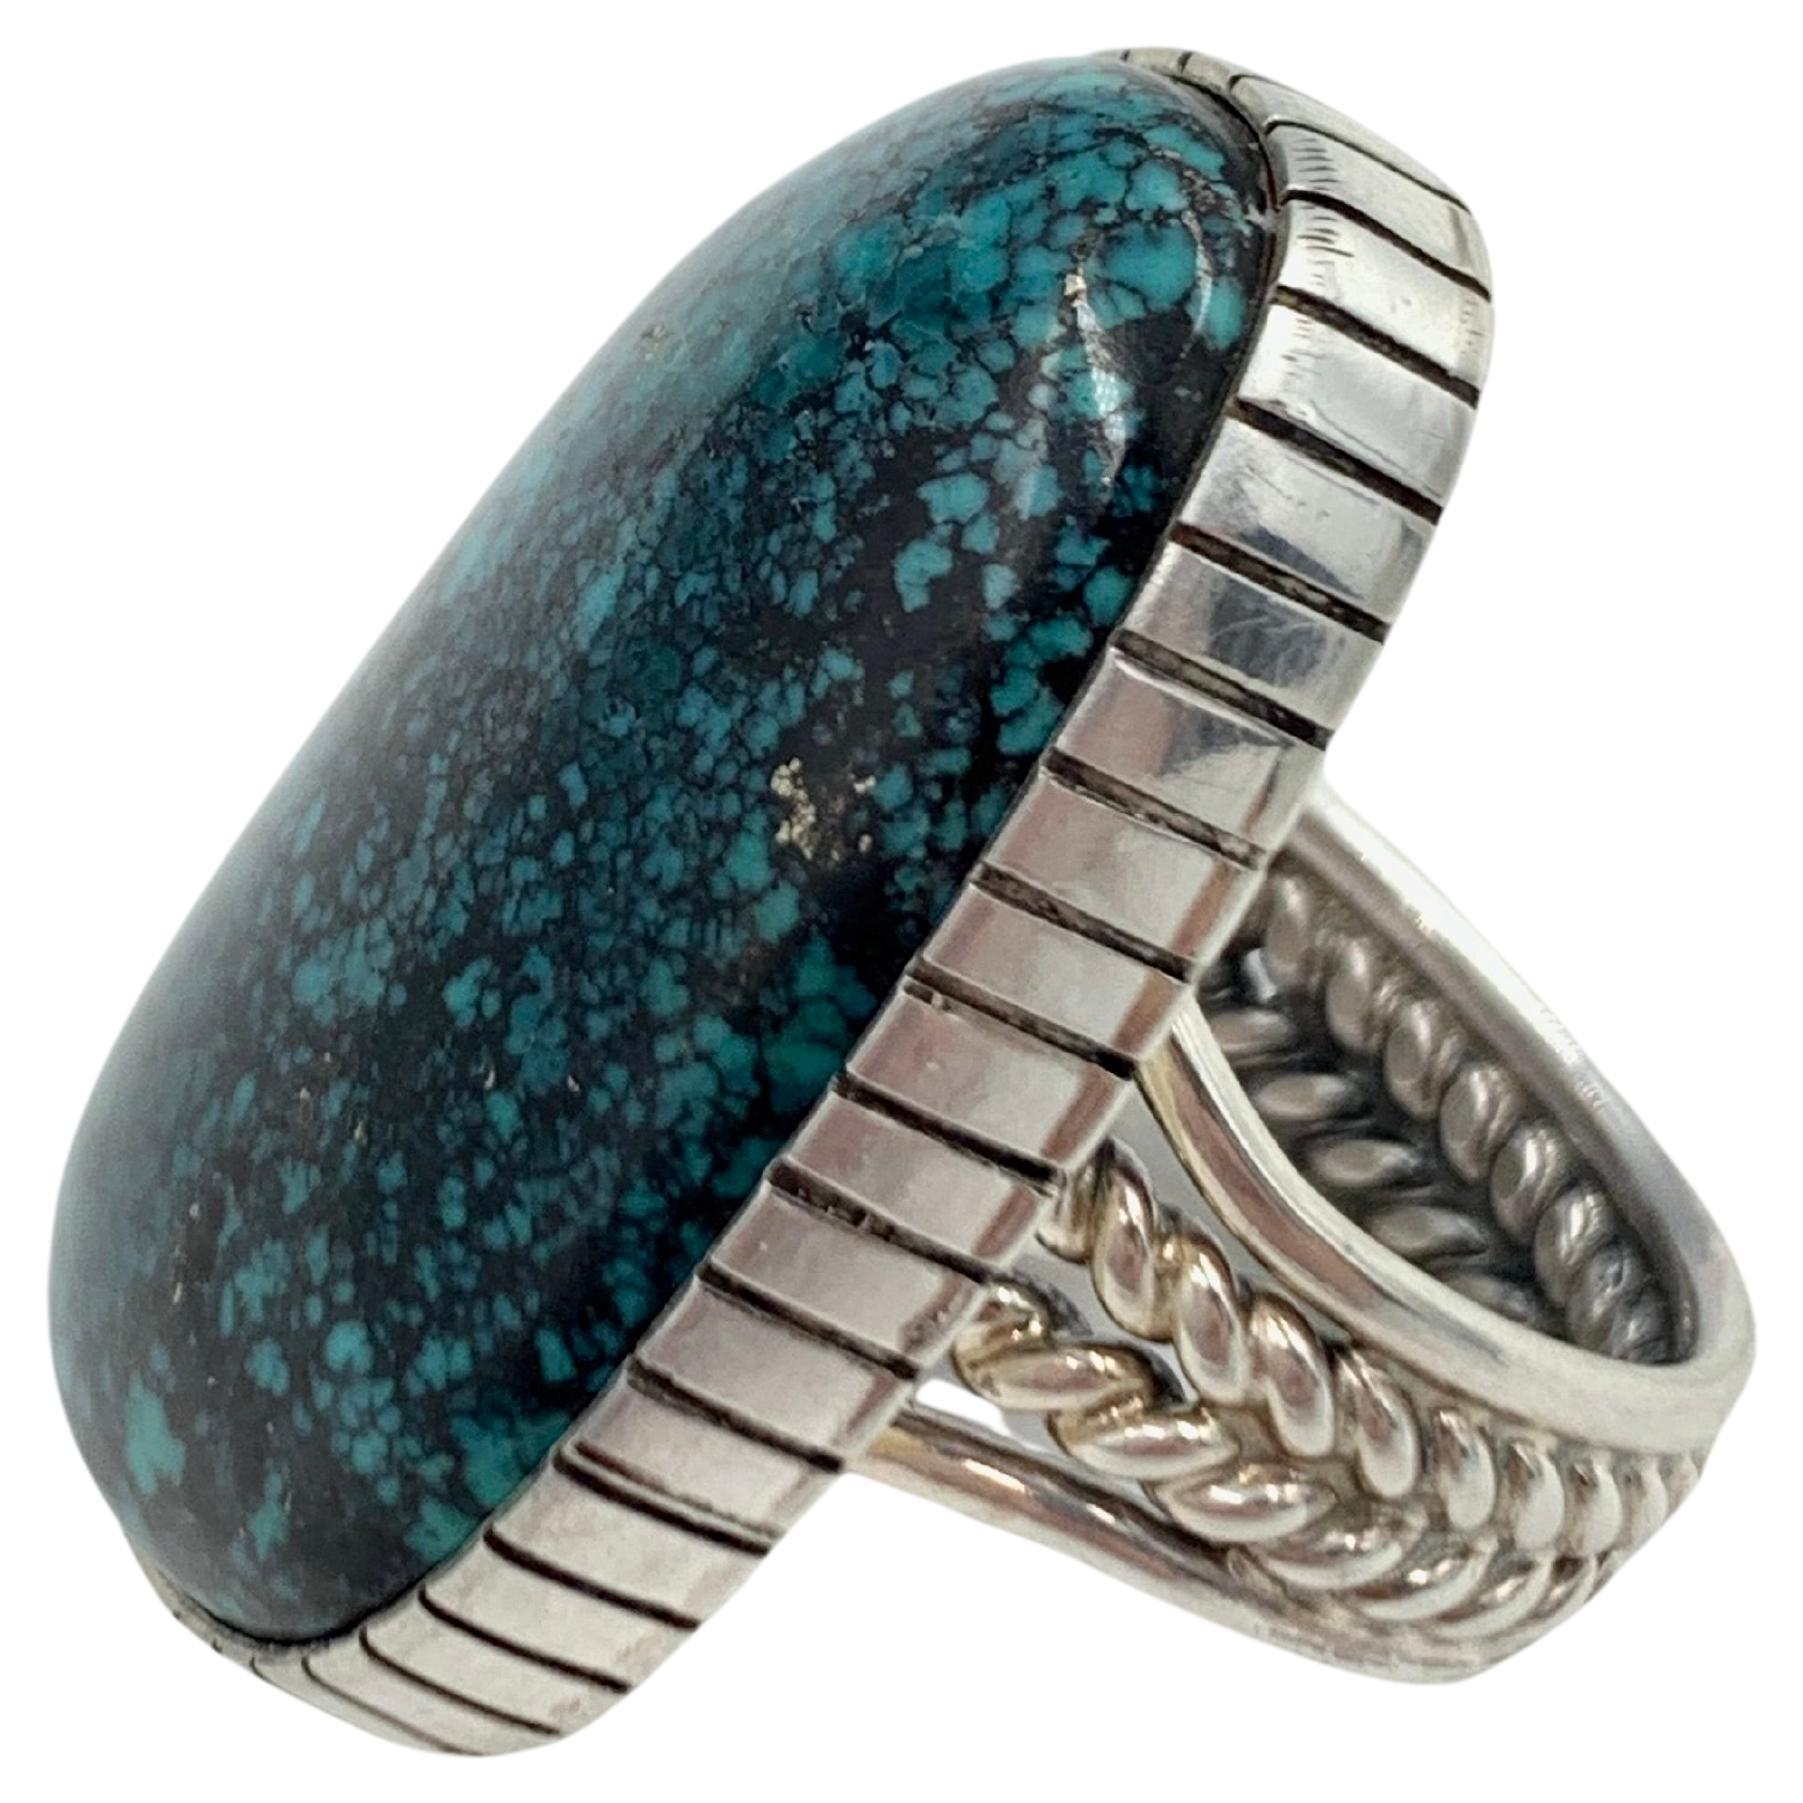 King's Manassa Türkis Sterling Silber Ring von Navajo Silversmith A. Lee